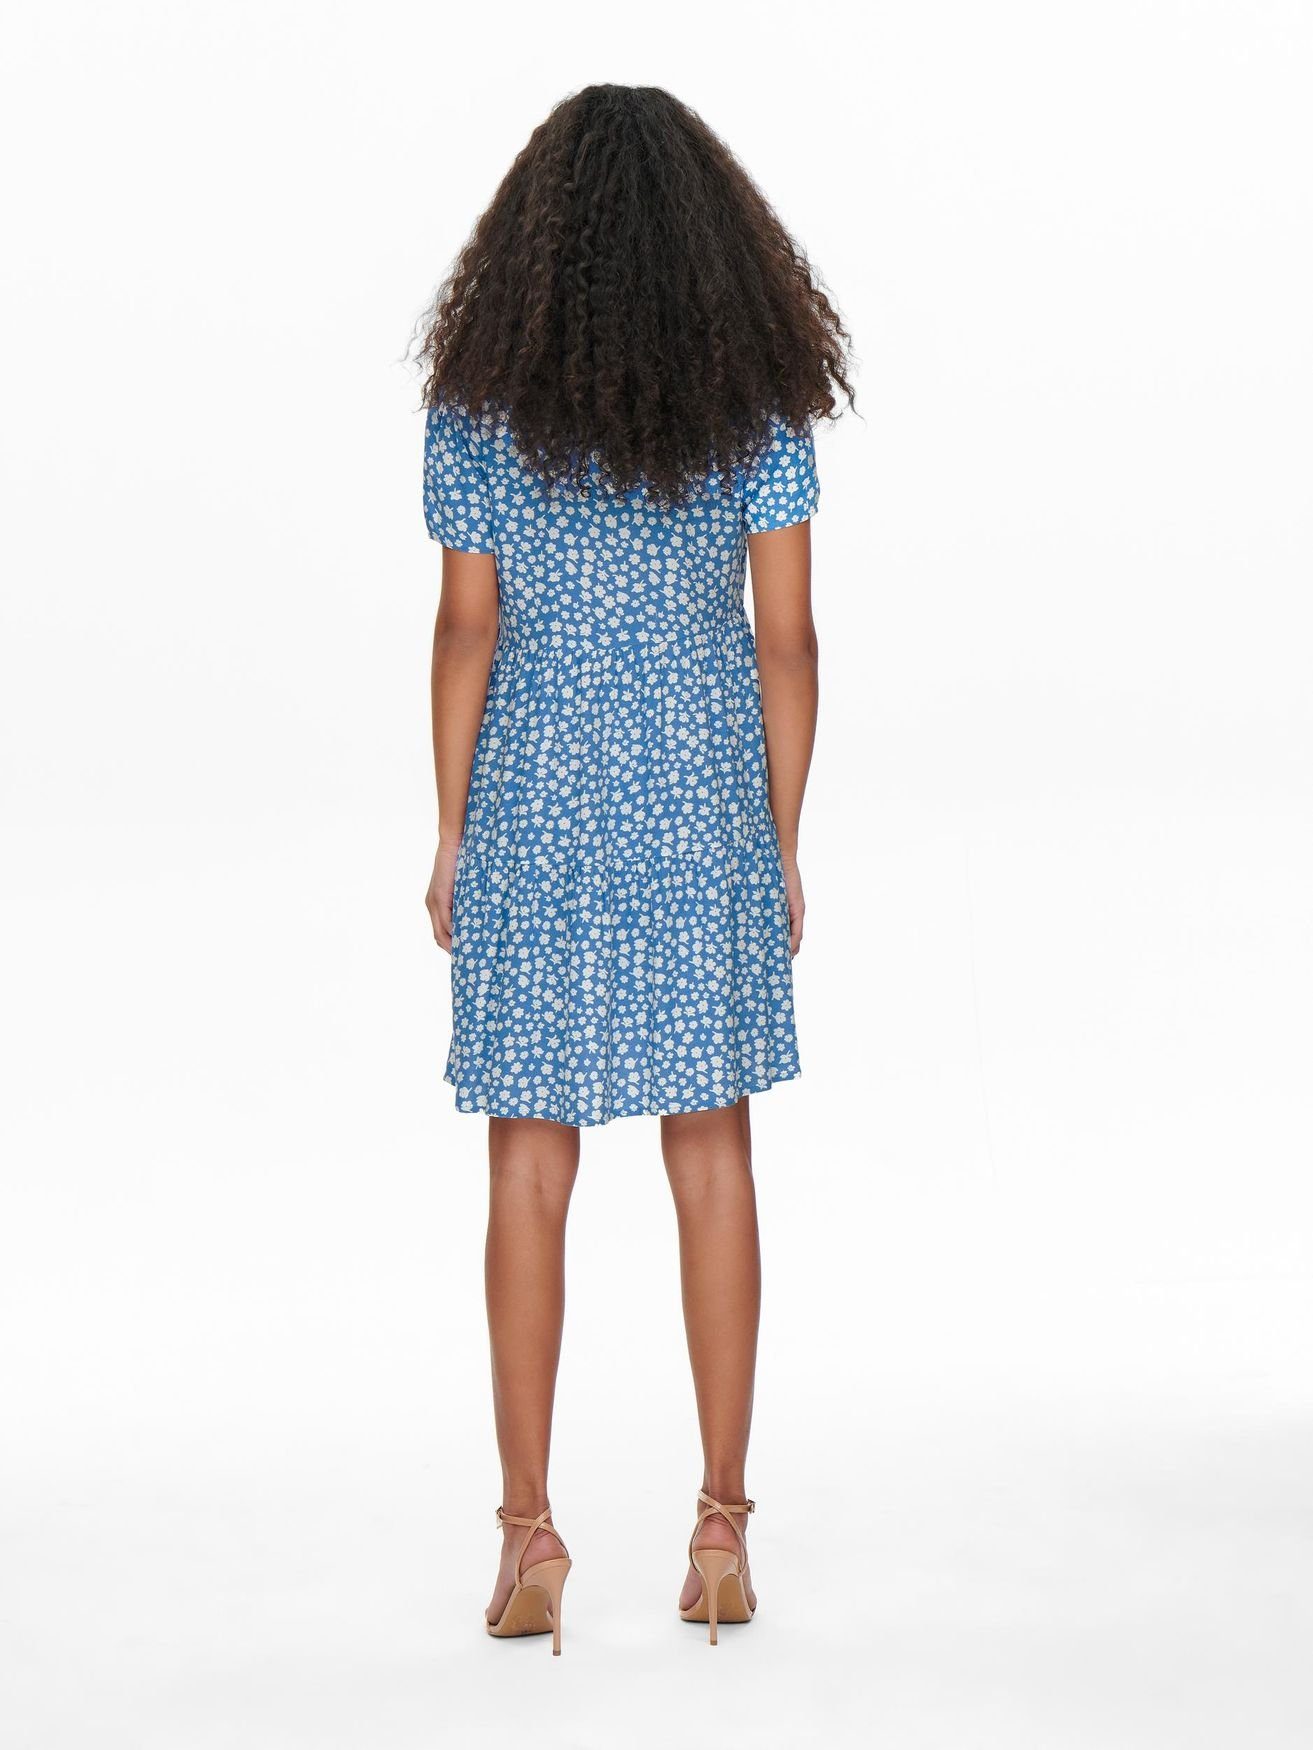 Kurzes ONLZALLY Blusen Shirtkleid (knielang) Kleid in 4928 ONLY Blau V-Ausschnitt